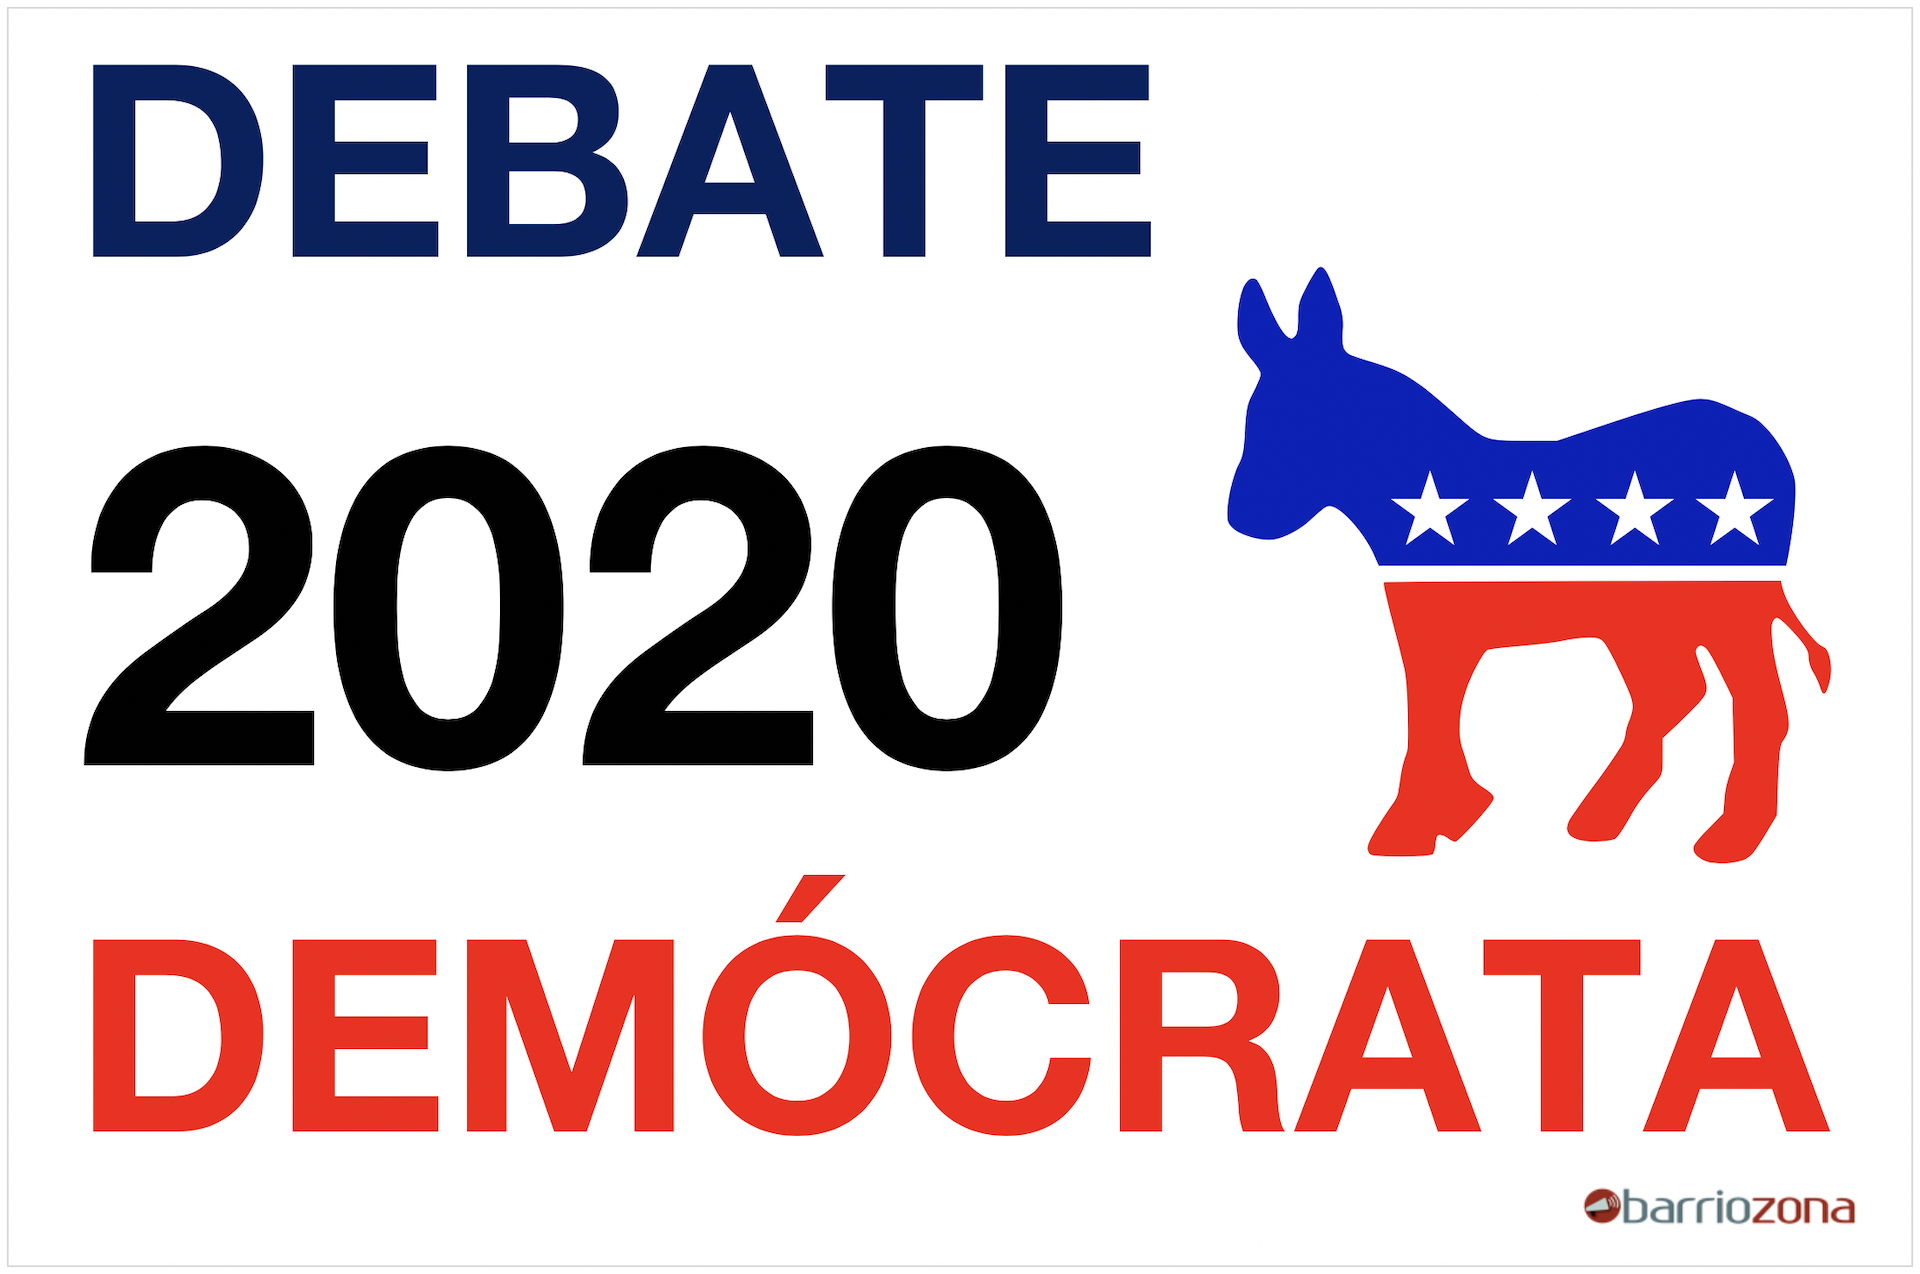 El undécimo debate presidencial demócrata tendrá lugar en Phoenix, Arizona el 15 de marzo, en donde los aspirantes a la nominación se verán las caras. Ilustración: Barriozona Magazine © 2020